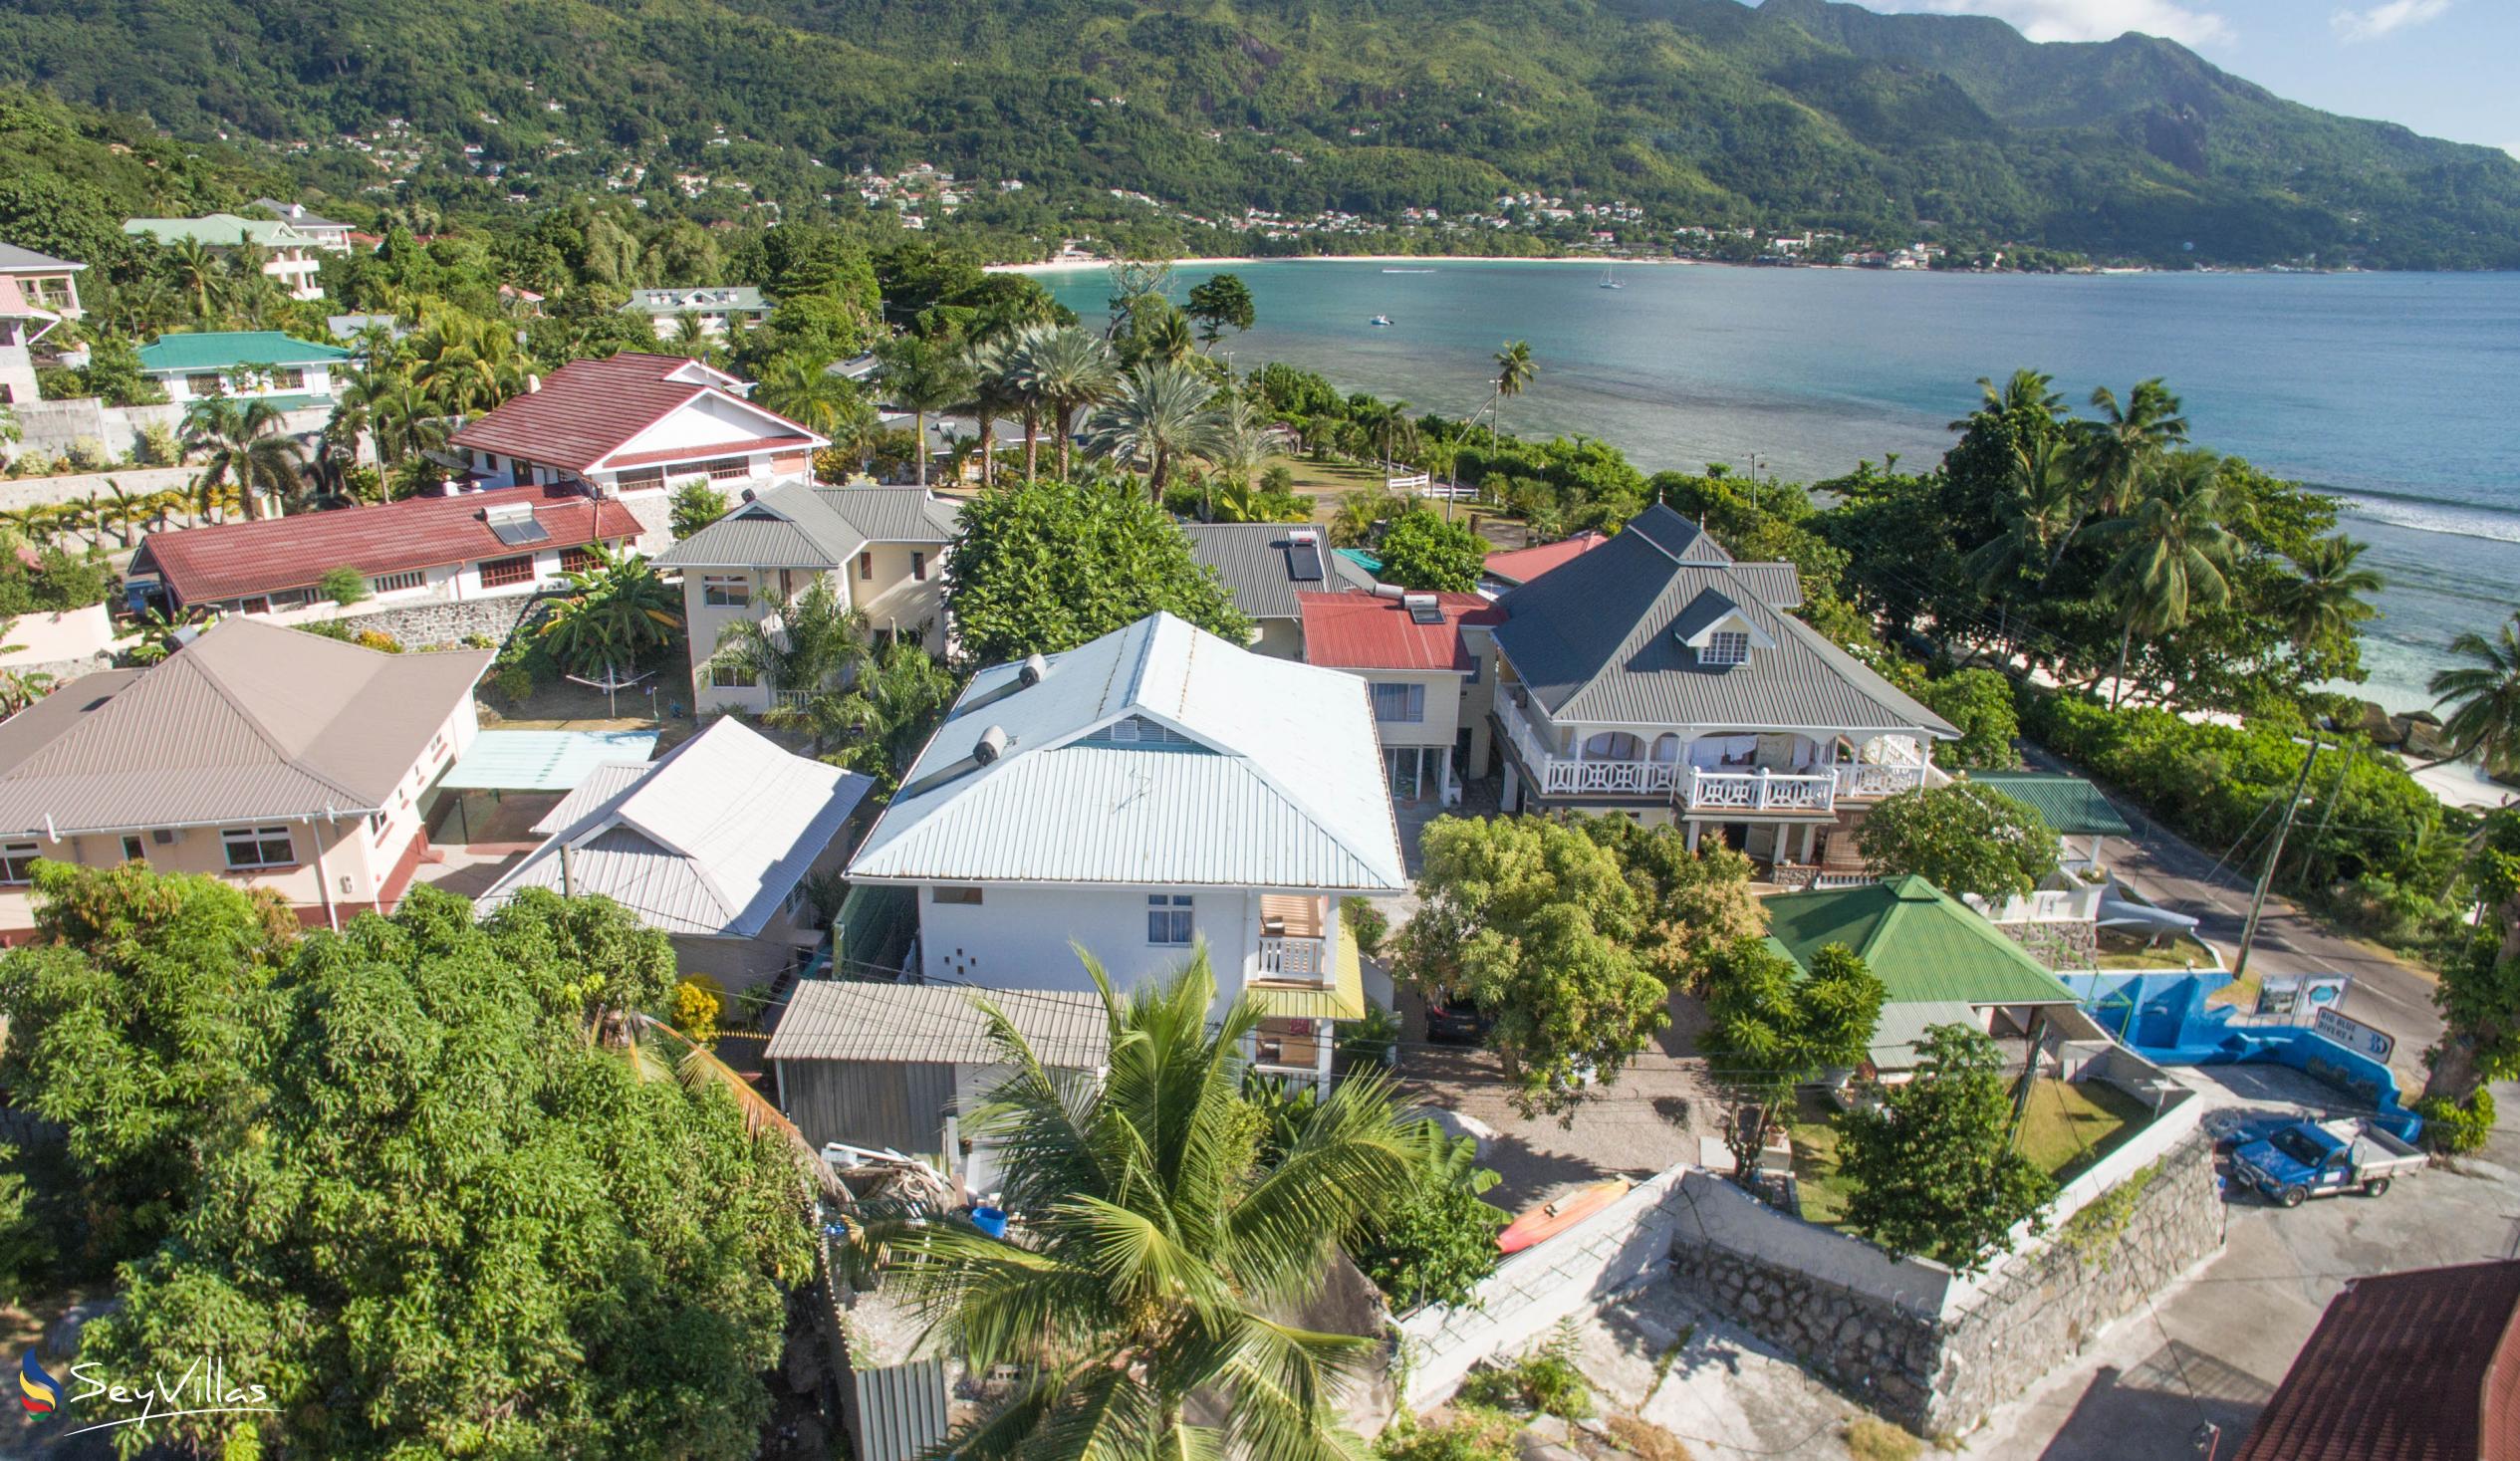 Foto 27: The Diver's Lodge - Posizione - Mahé (Seychelles)